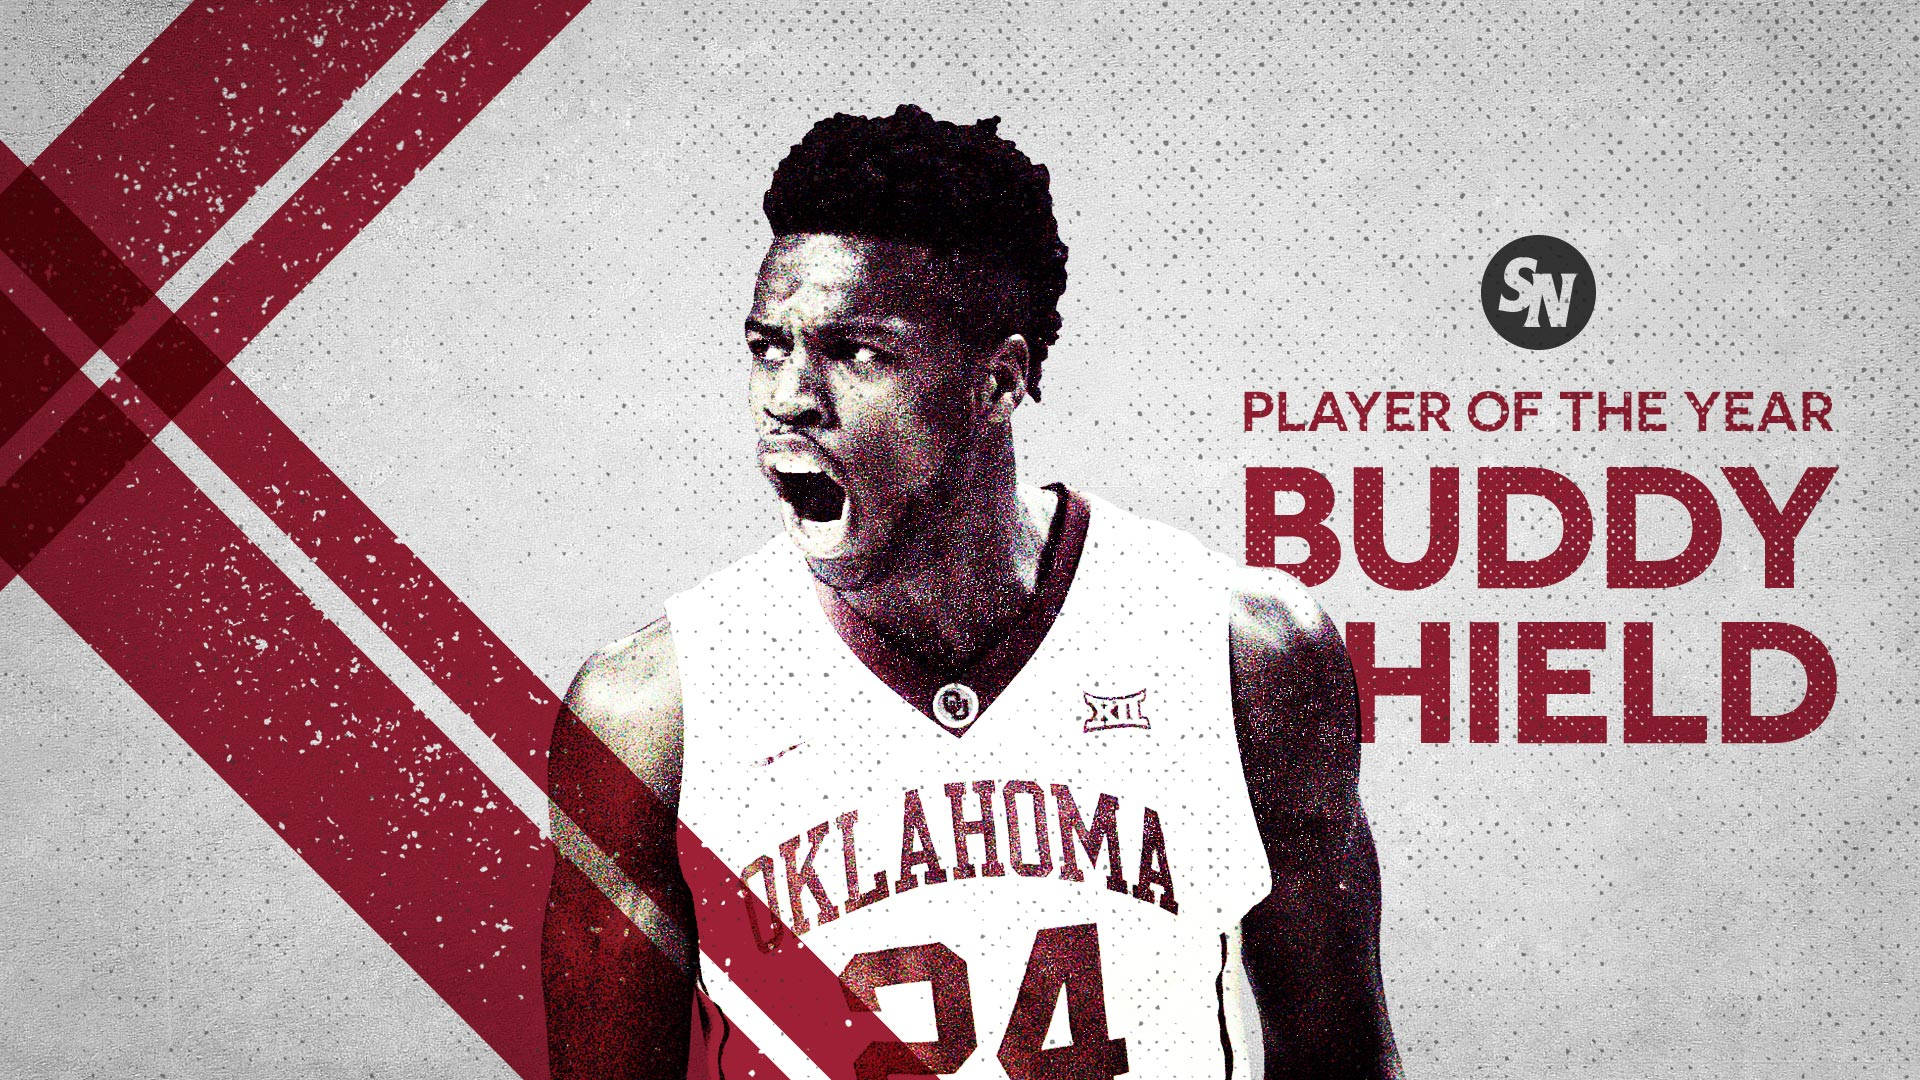 Oklahoma Buddy Hield Digital Cover